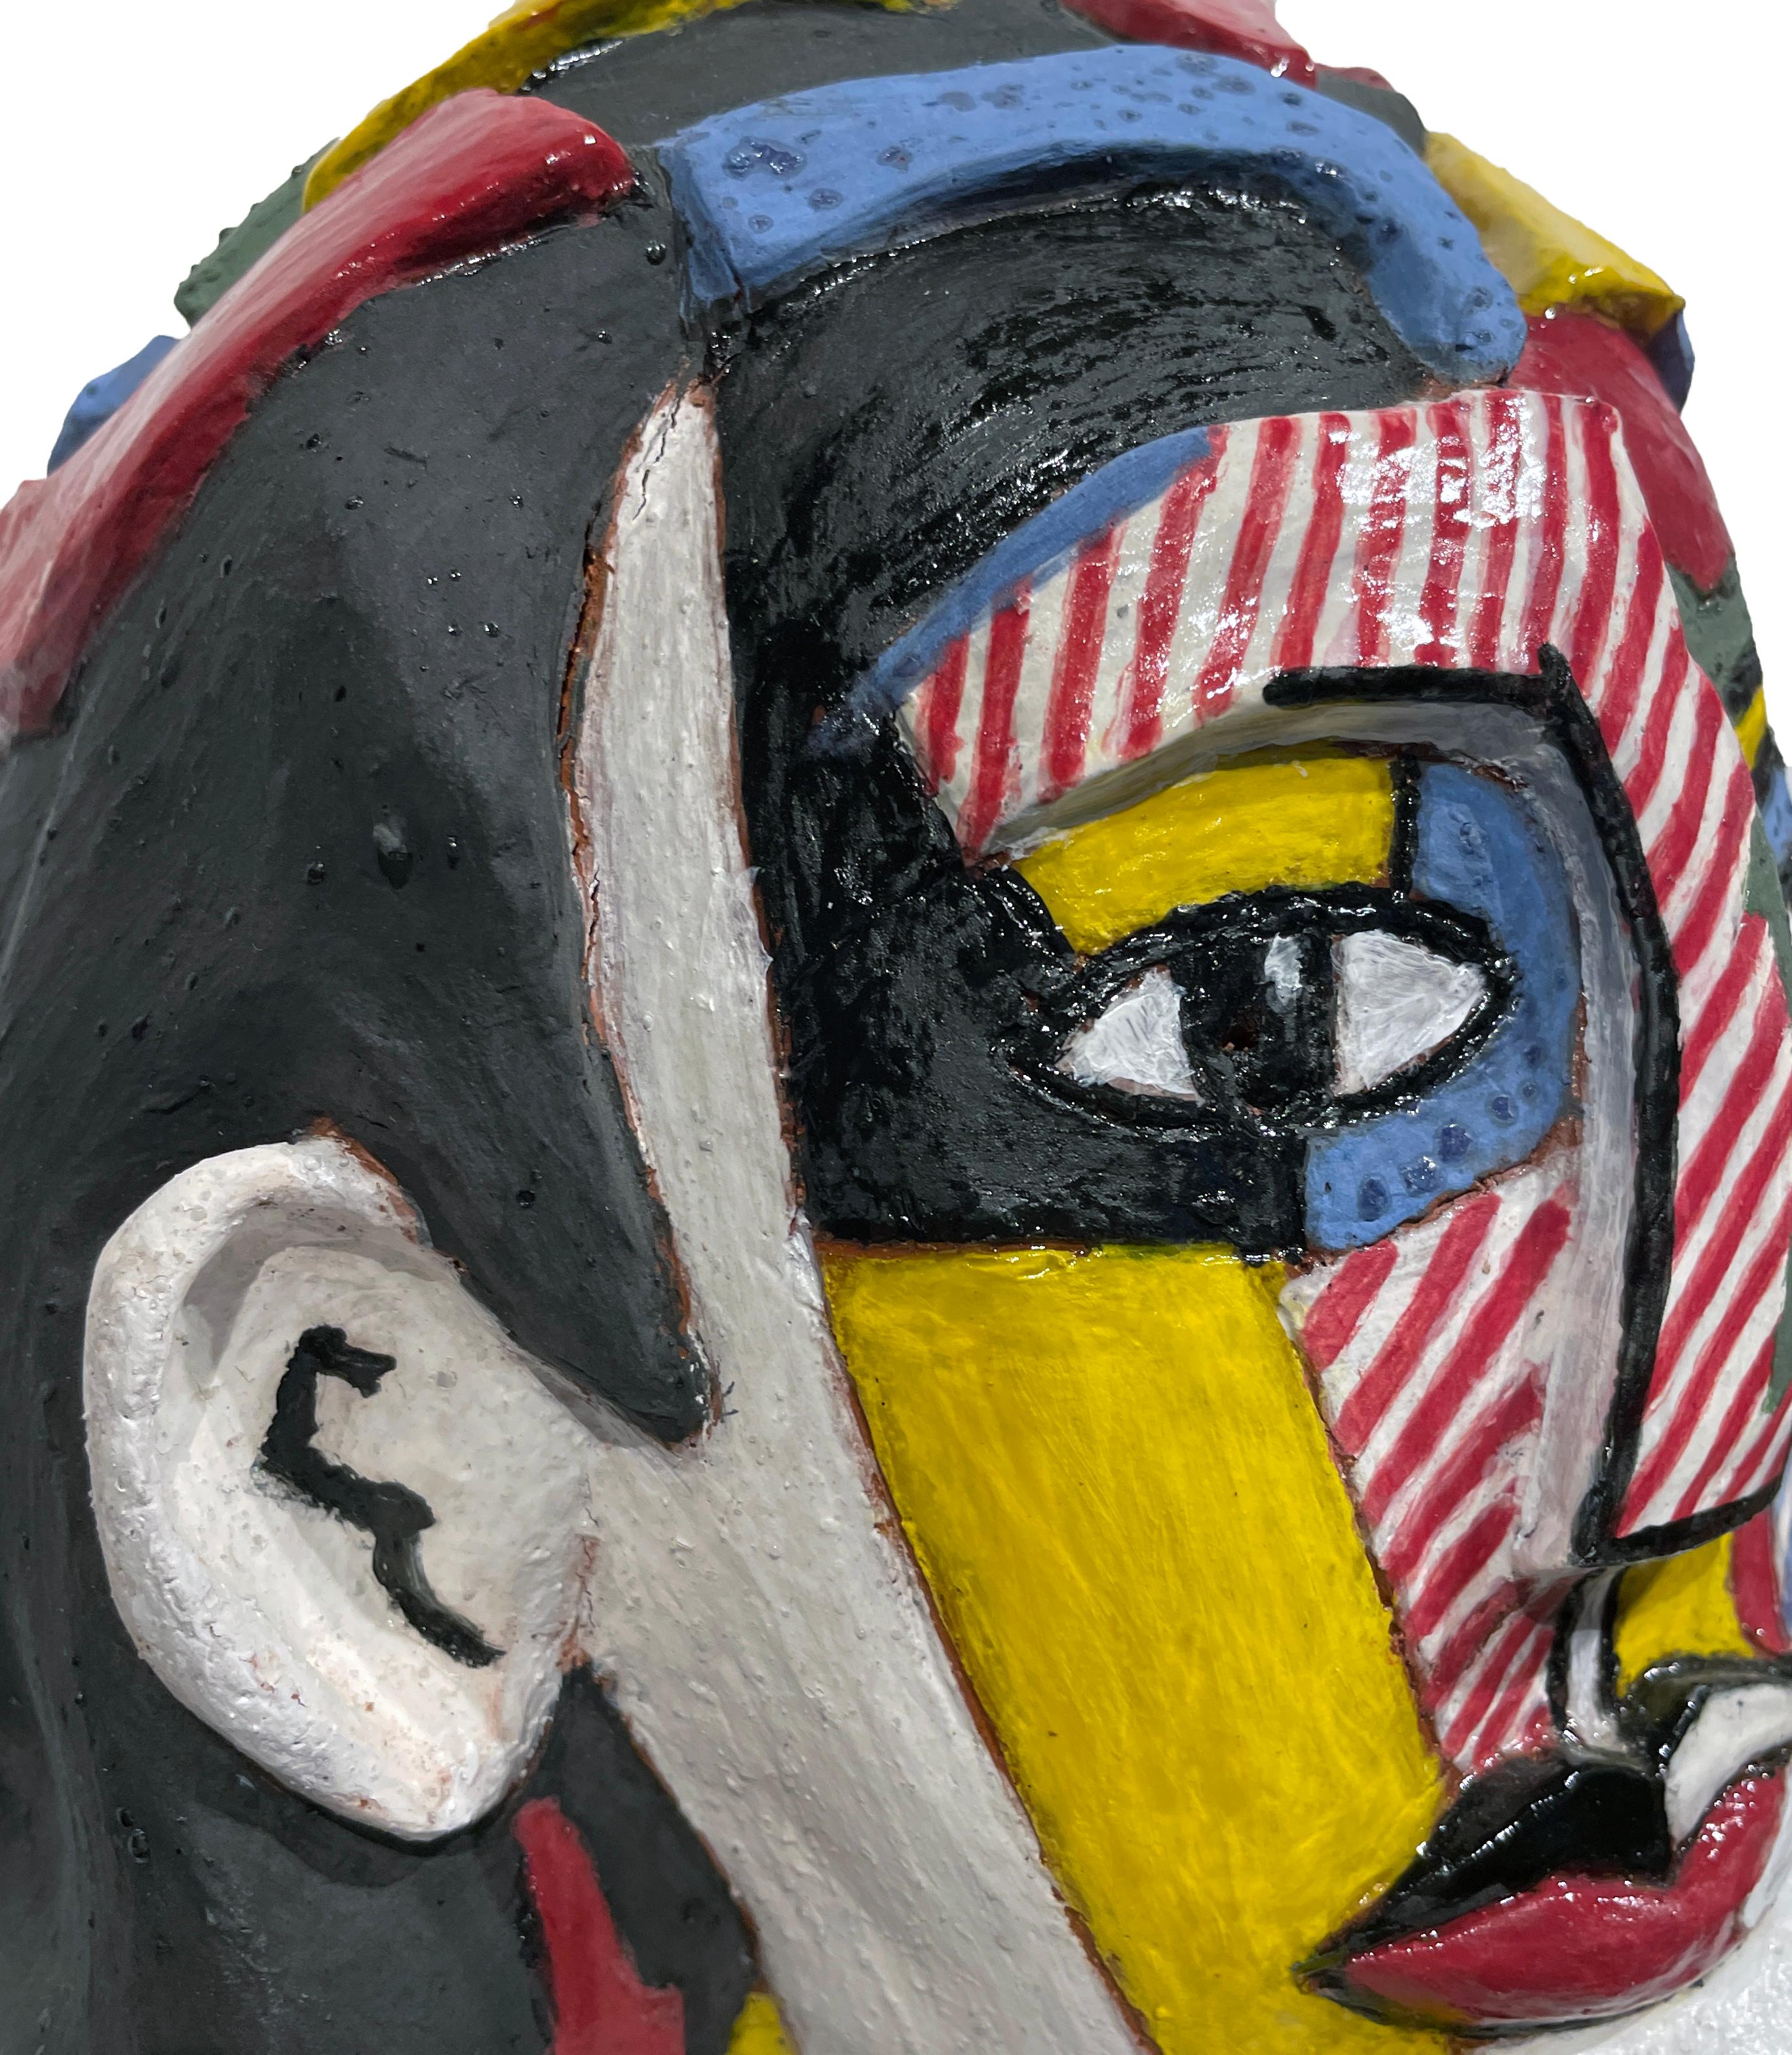 Lichtenstein's Portrait of a Woman - Ode to Roy Lichtenstein, Hand Built Ceramic For Sale 1